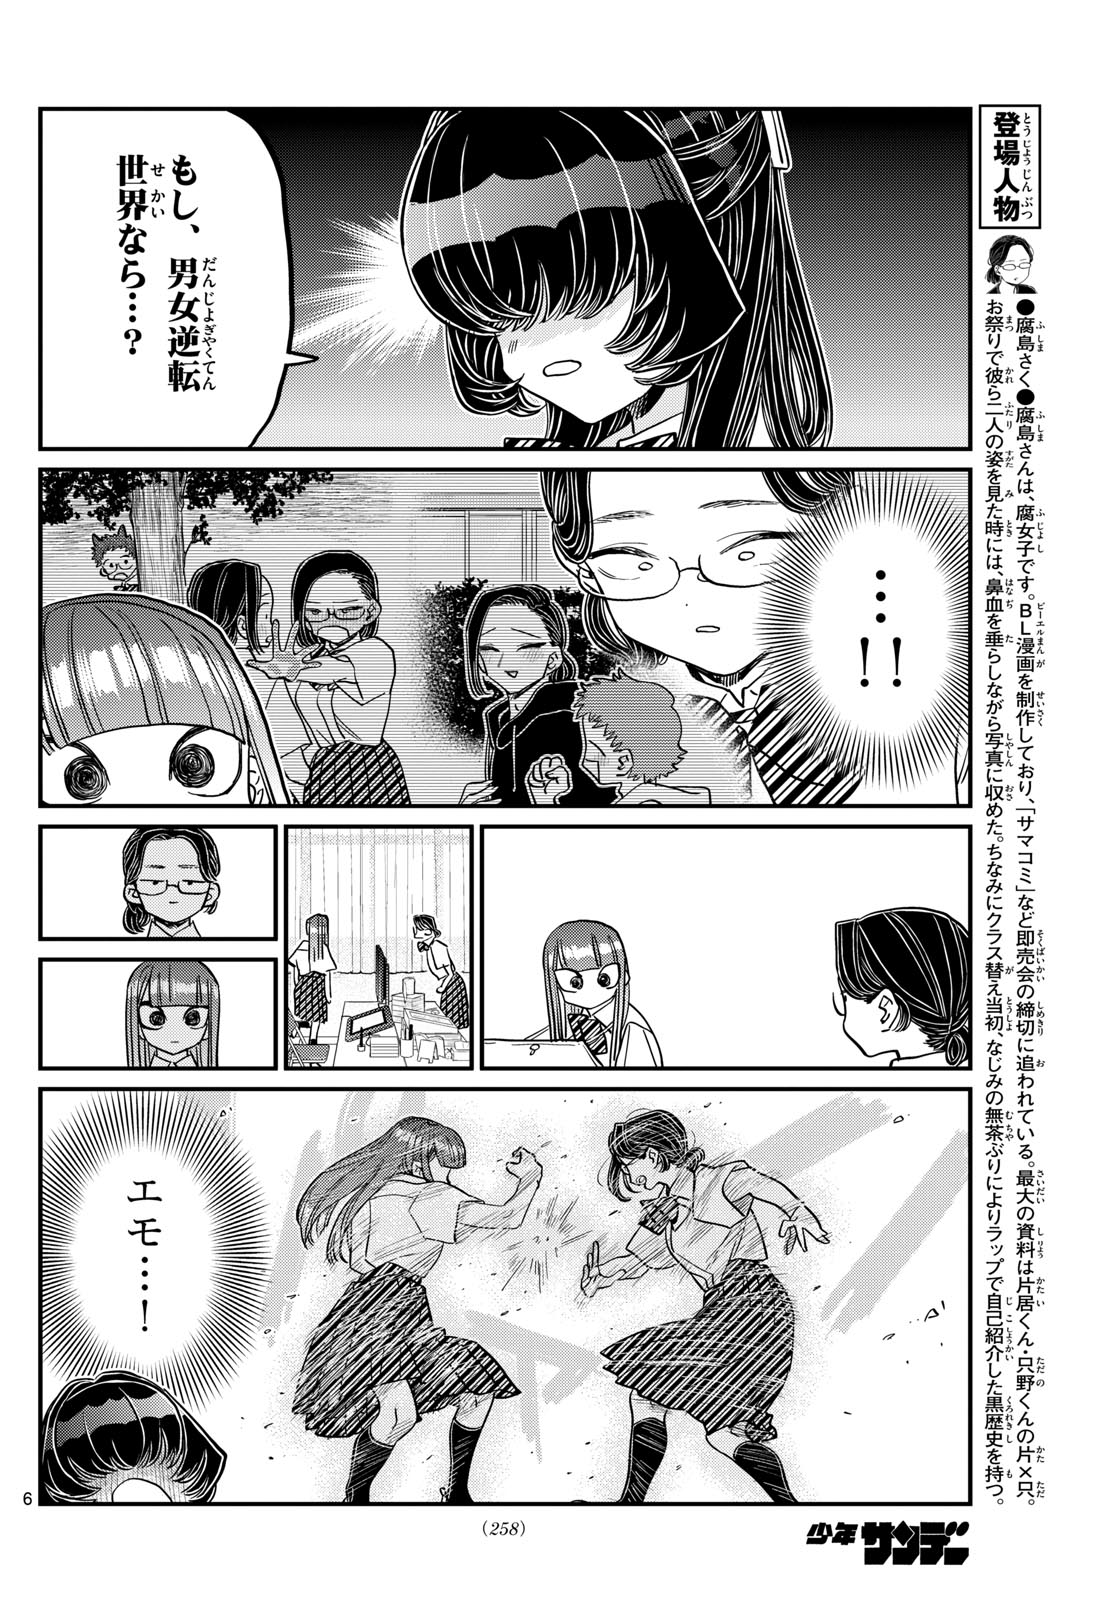 Komi-san wa Komyushou Desu - Chapter 440 - Page 6